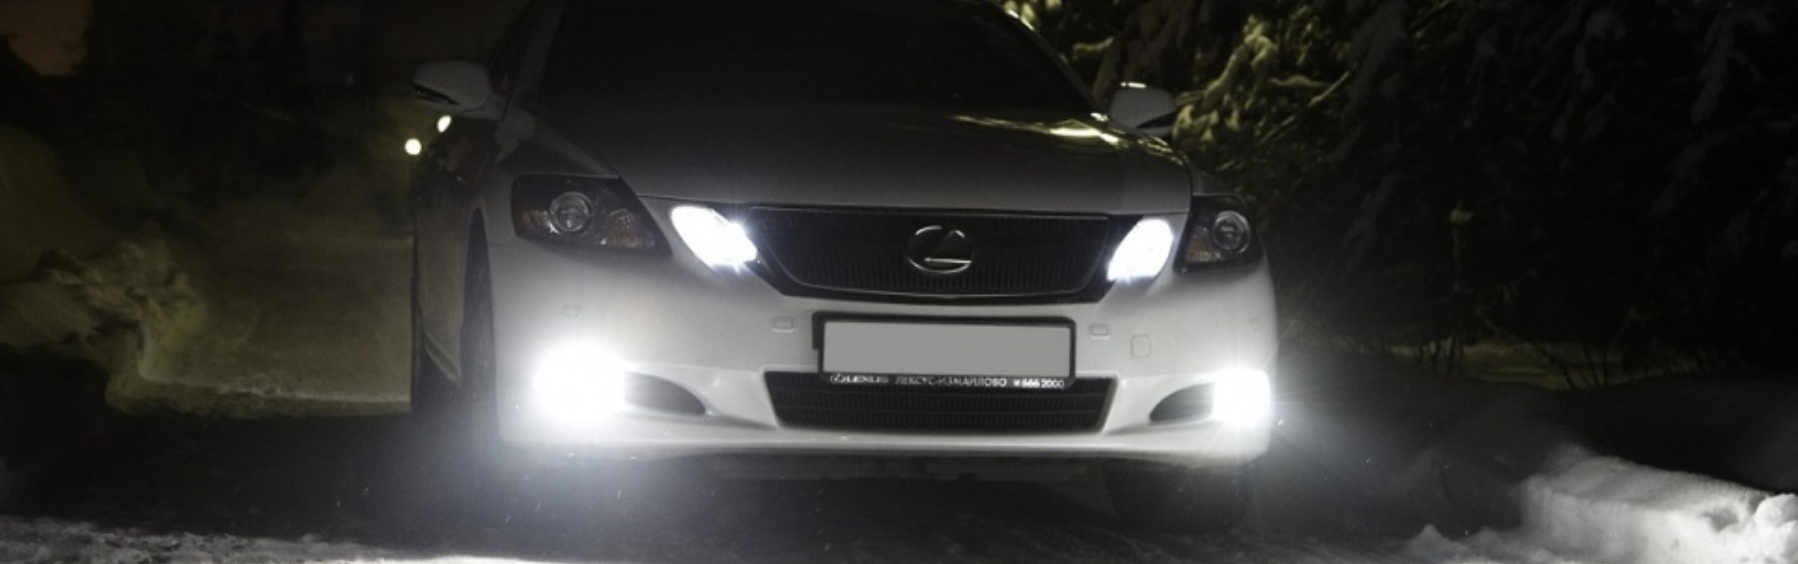 Имеют ли право сотрудники ГИБДД проверять какие лампы установлены в автомобиле?